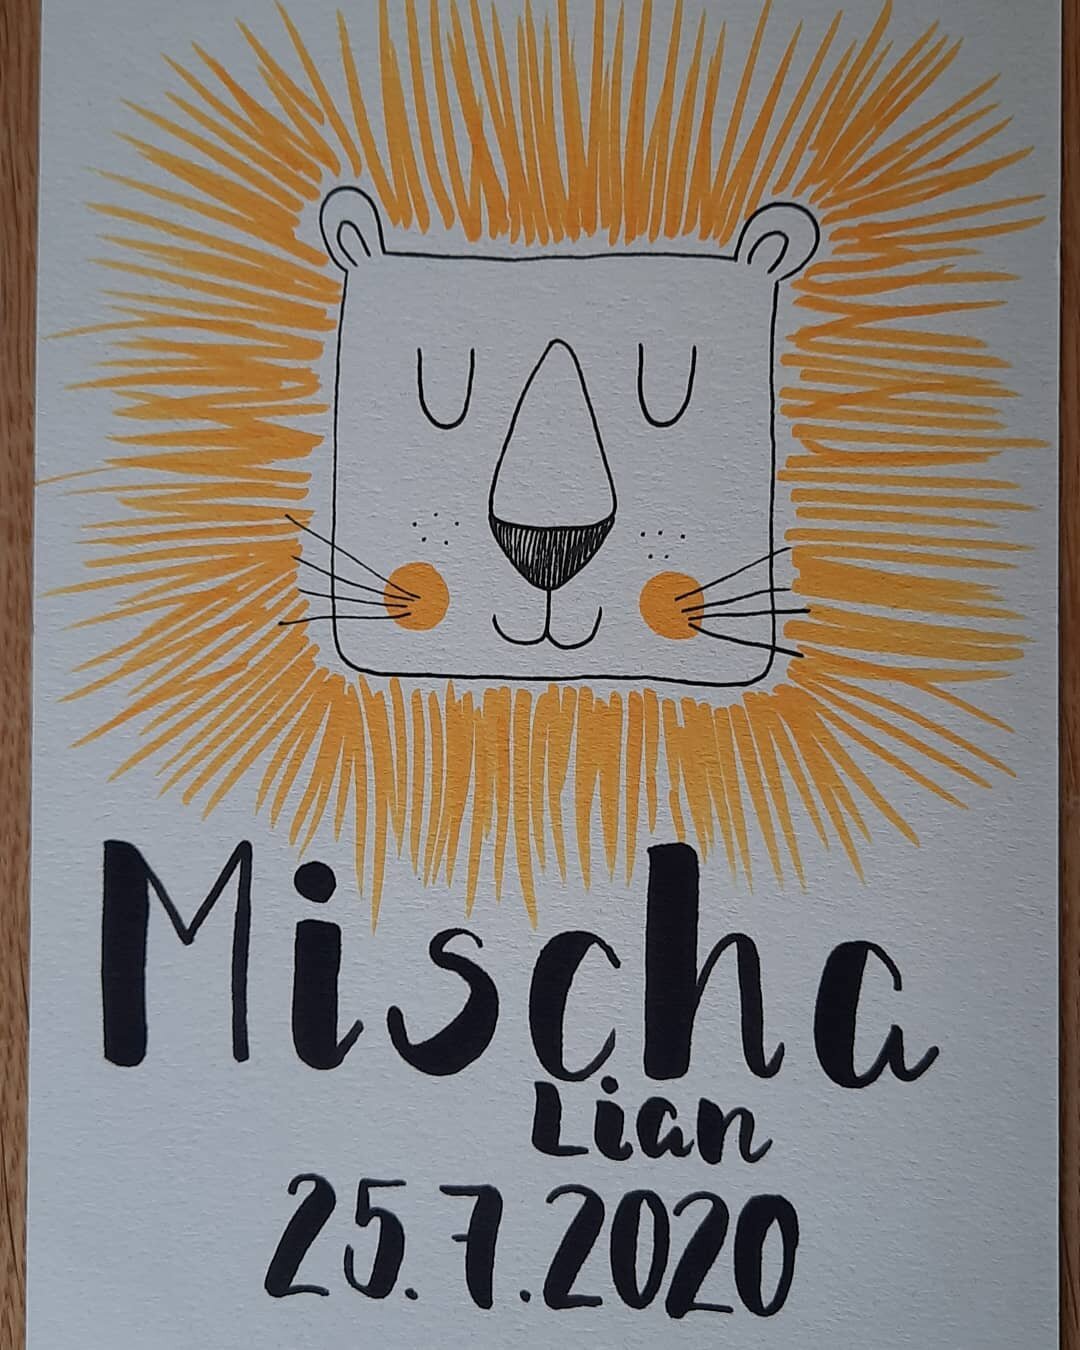 Welcome to the world Mischa!
.
.
.
.
.
Design from: www
Stifte: #karinbrushmarkerpro #micronpigma
(Unbezahlte/unbeauftragte Werbung)

#welcometotheworldbabyboy #welcometotheworld #babyboy #newborn #handlettering #handletteringschweiz #brushpenletteri